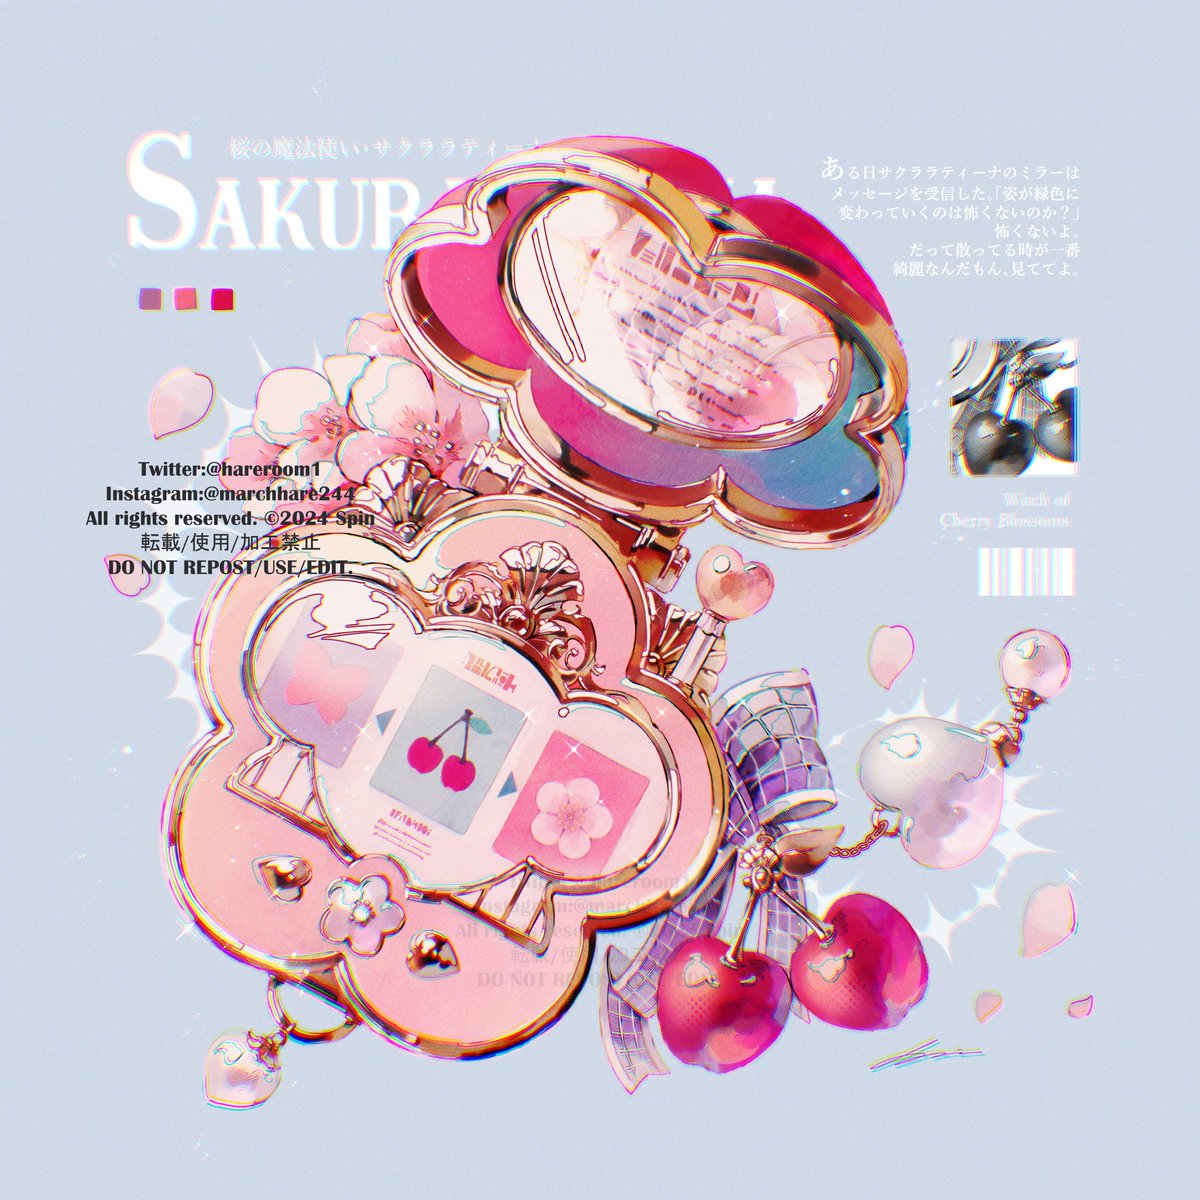 「桜の魔法使いのコンパクト 」|Spin@3.25~26出版記念展/作品集2巻発売中のイラスト